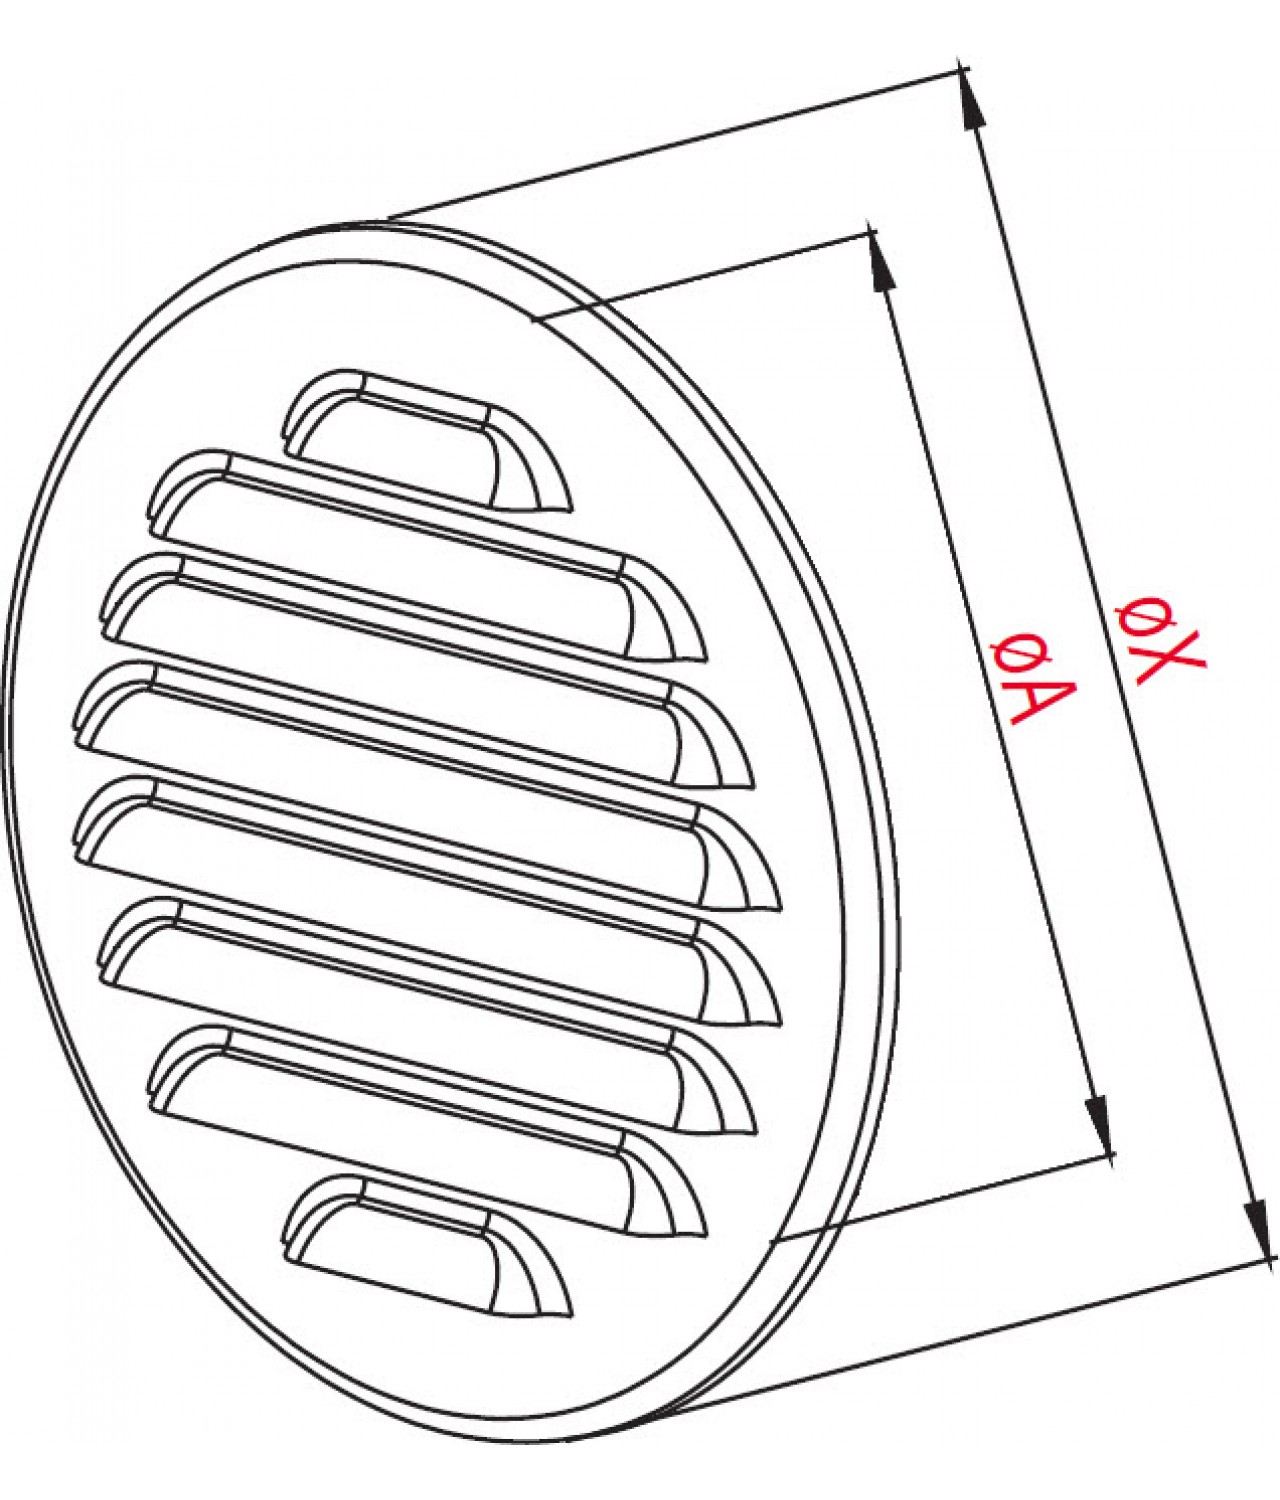 Вентиляционная решетка из нержавеющей стали META18N Ø150 мм - чертеж